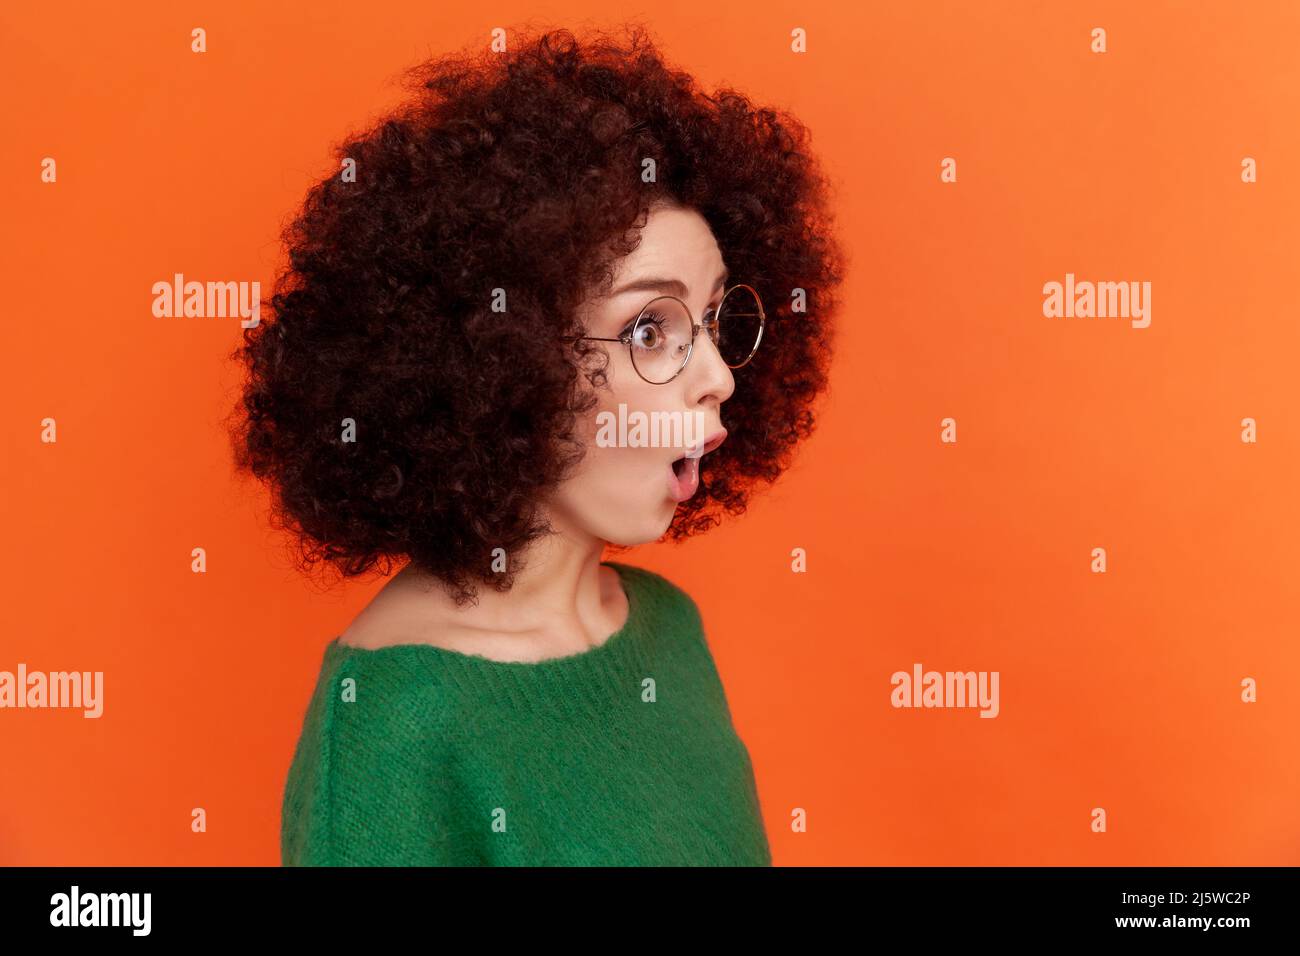 Portrait de profil de la femme choquée avec la coiffure afro en vert décontracté style chandail debout avec la bouche ouverte, regardant loin, voit quelque chose de surprenant. Studio d'intérieur isolé sur fond orange. Banque D'Images